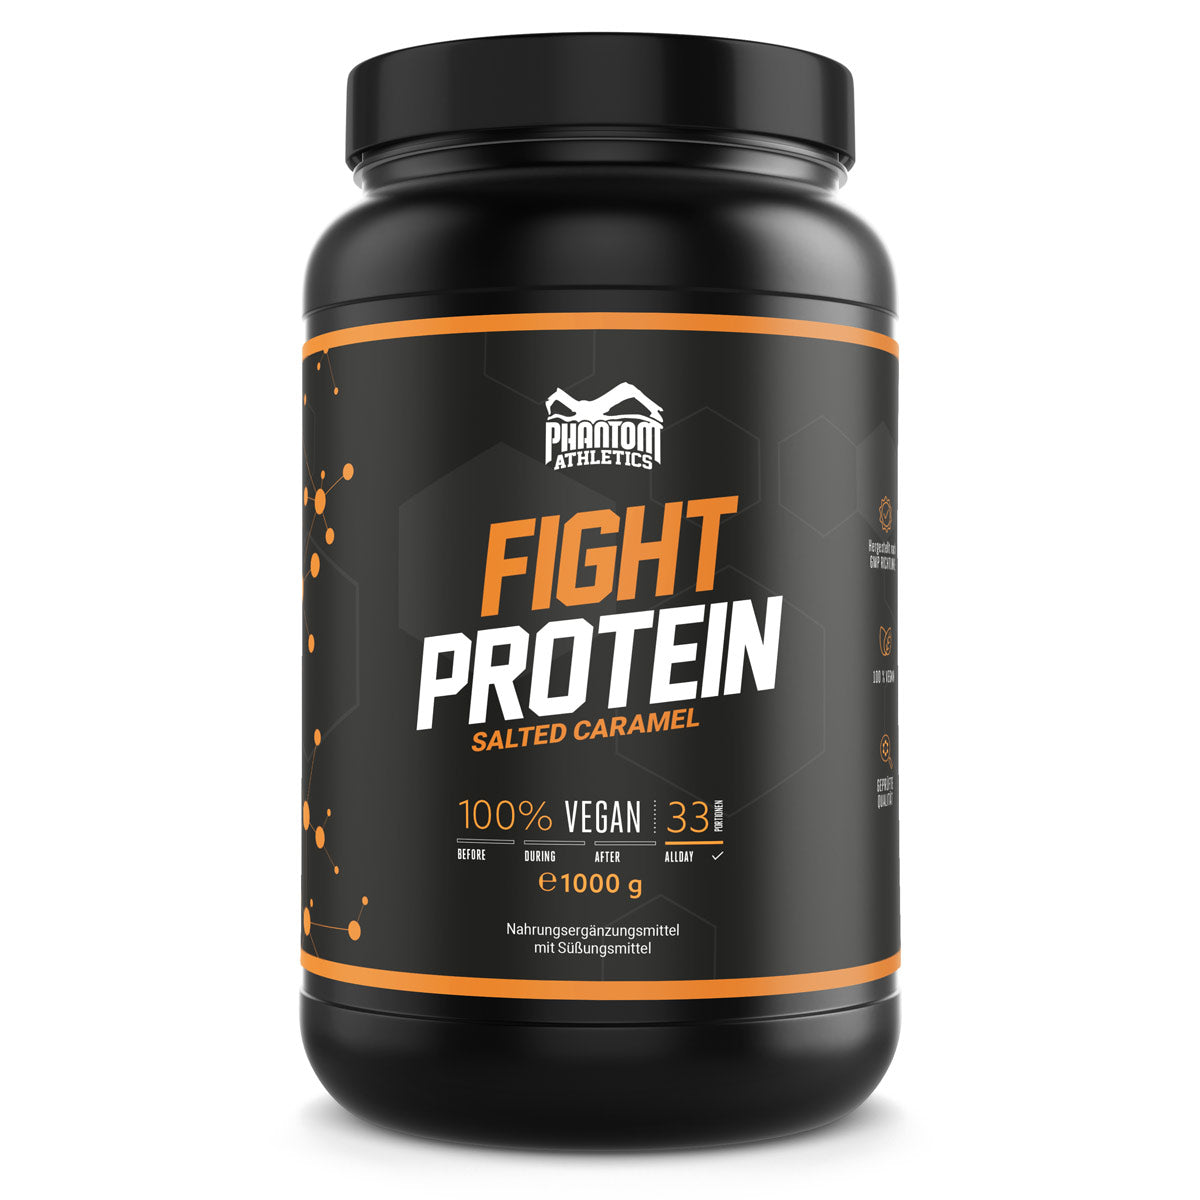 Phantom FIGHT Protein für Kampfsportler mit Salted Karamell Geschmack.